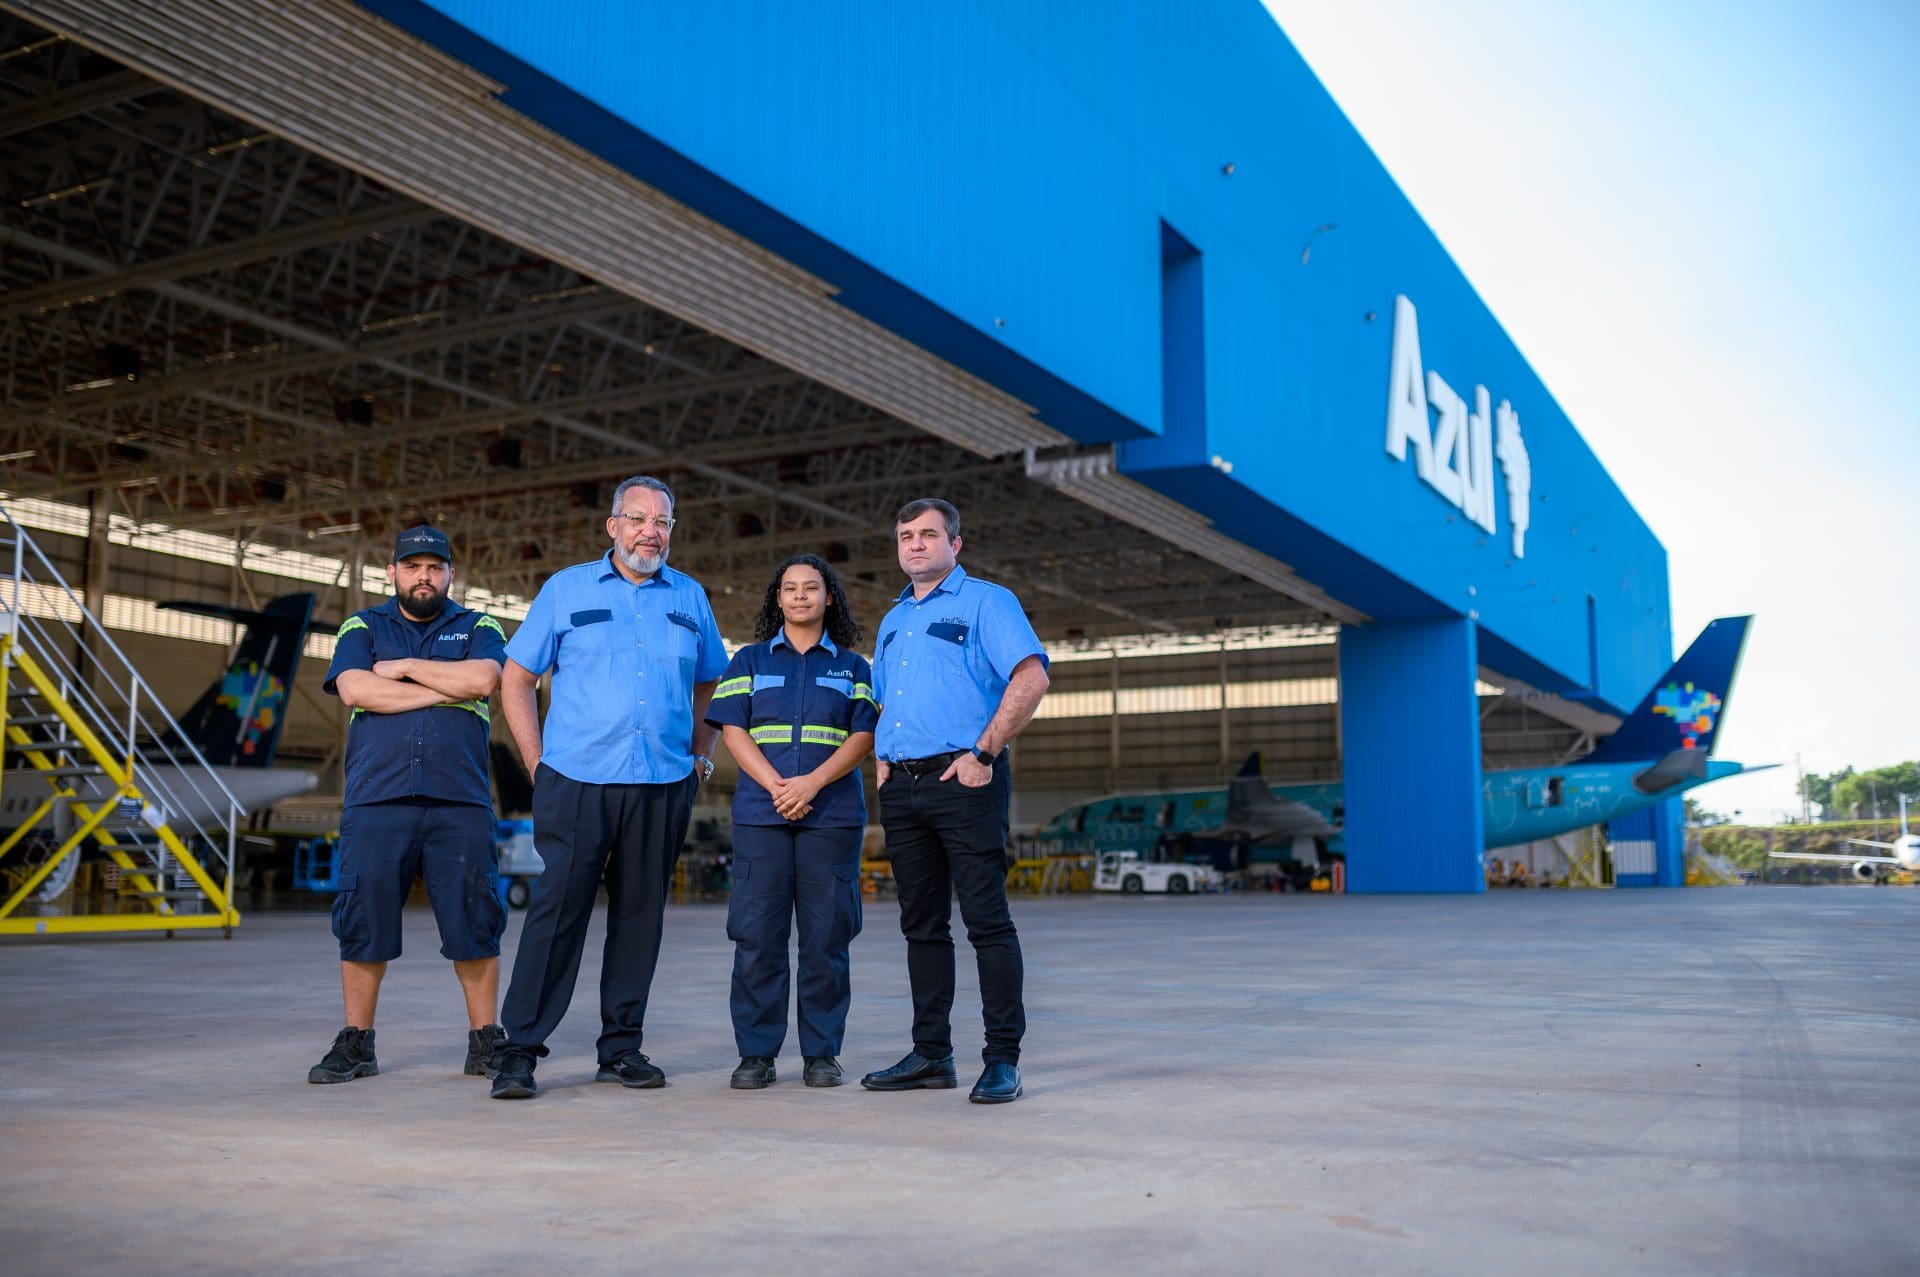 “AzulTec” nome dado aos Técnicos de Manutenção de Aeronaves da Azul